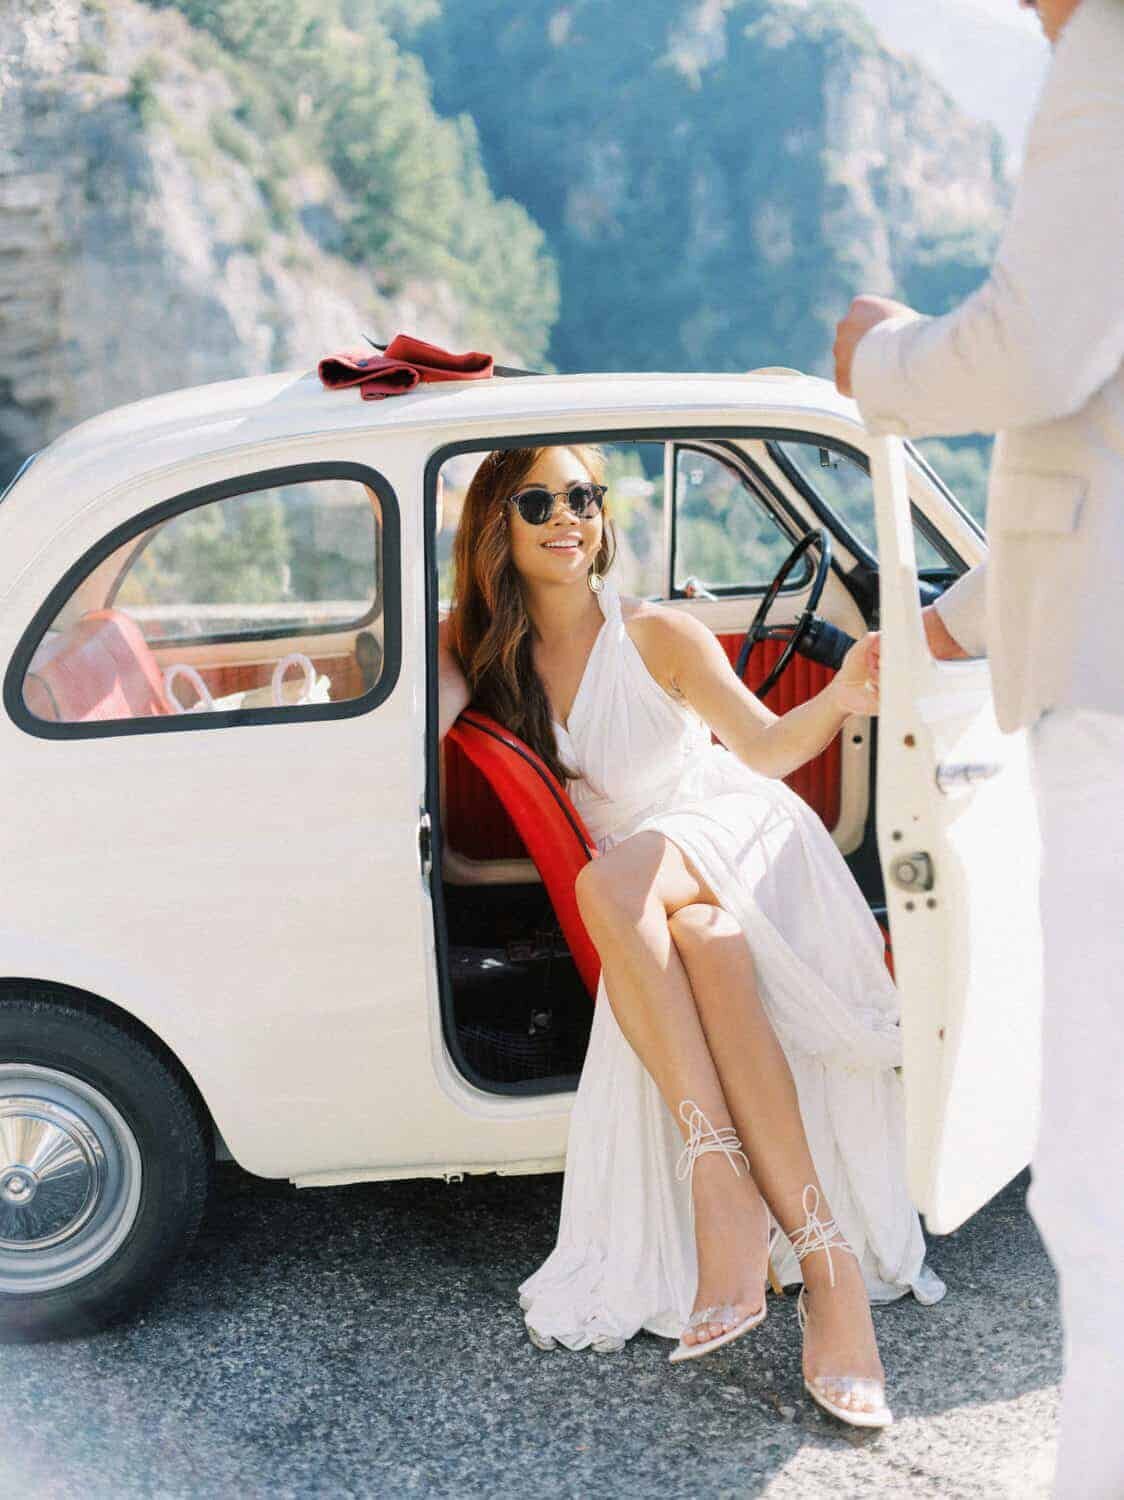 Positano-engagement-session-Amalfi-coast-Italy-by-Julia-Kaptelova_Photography-028